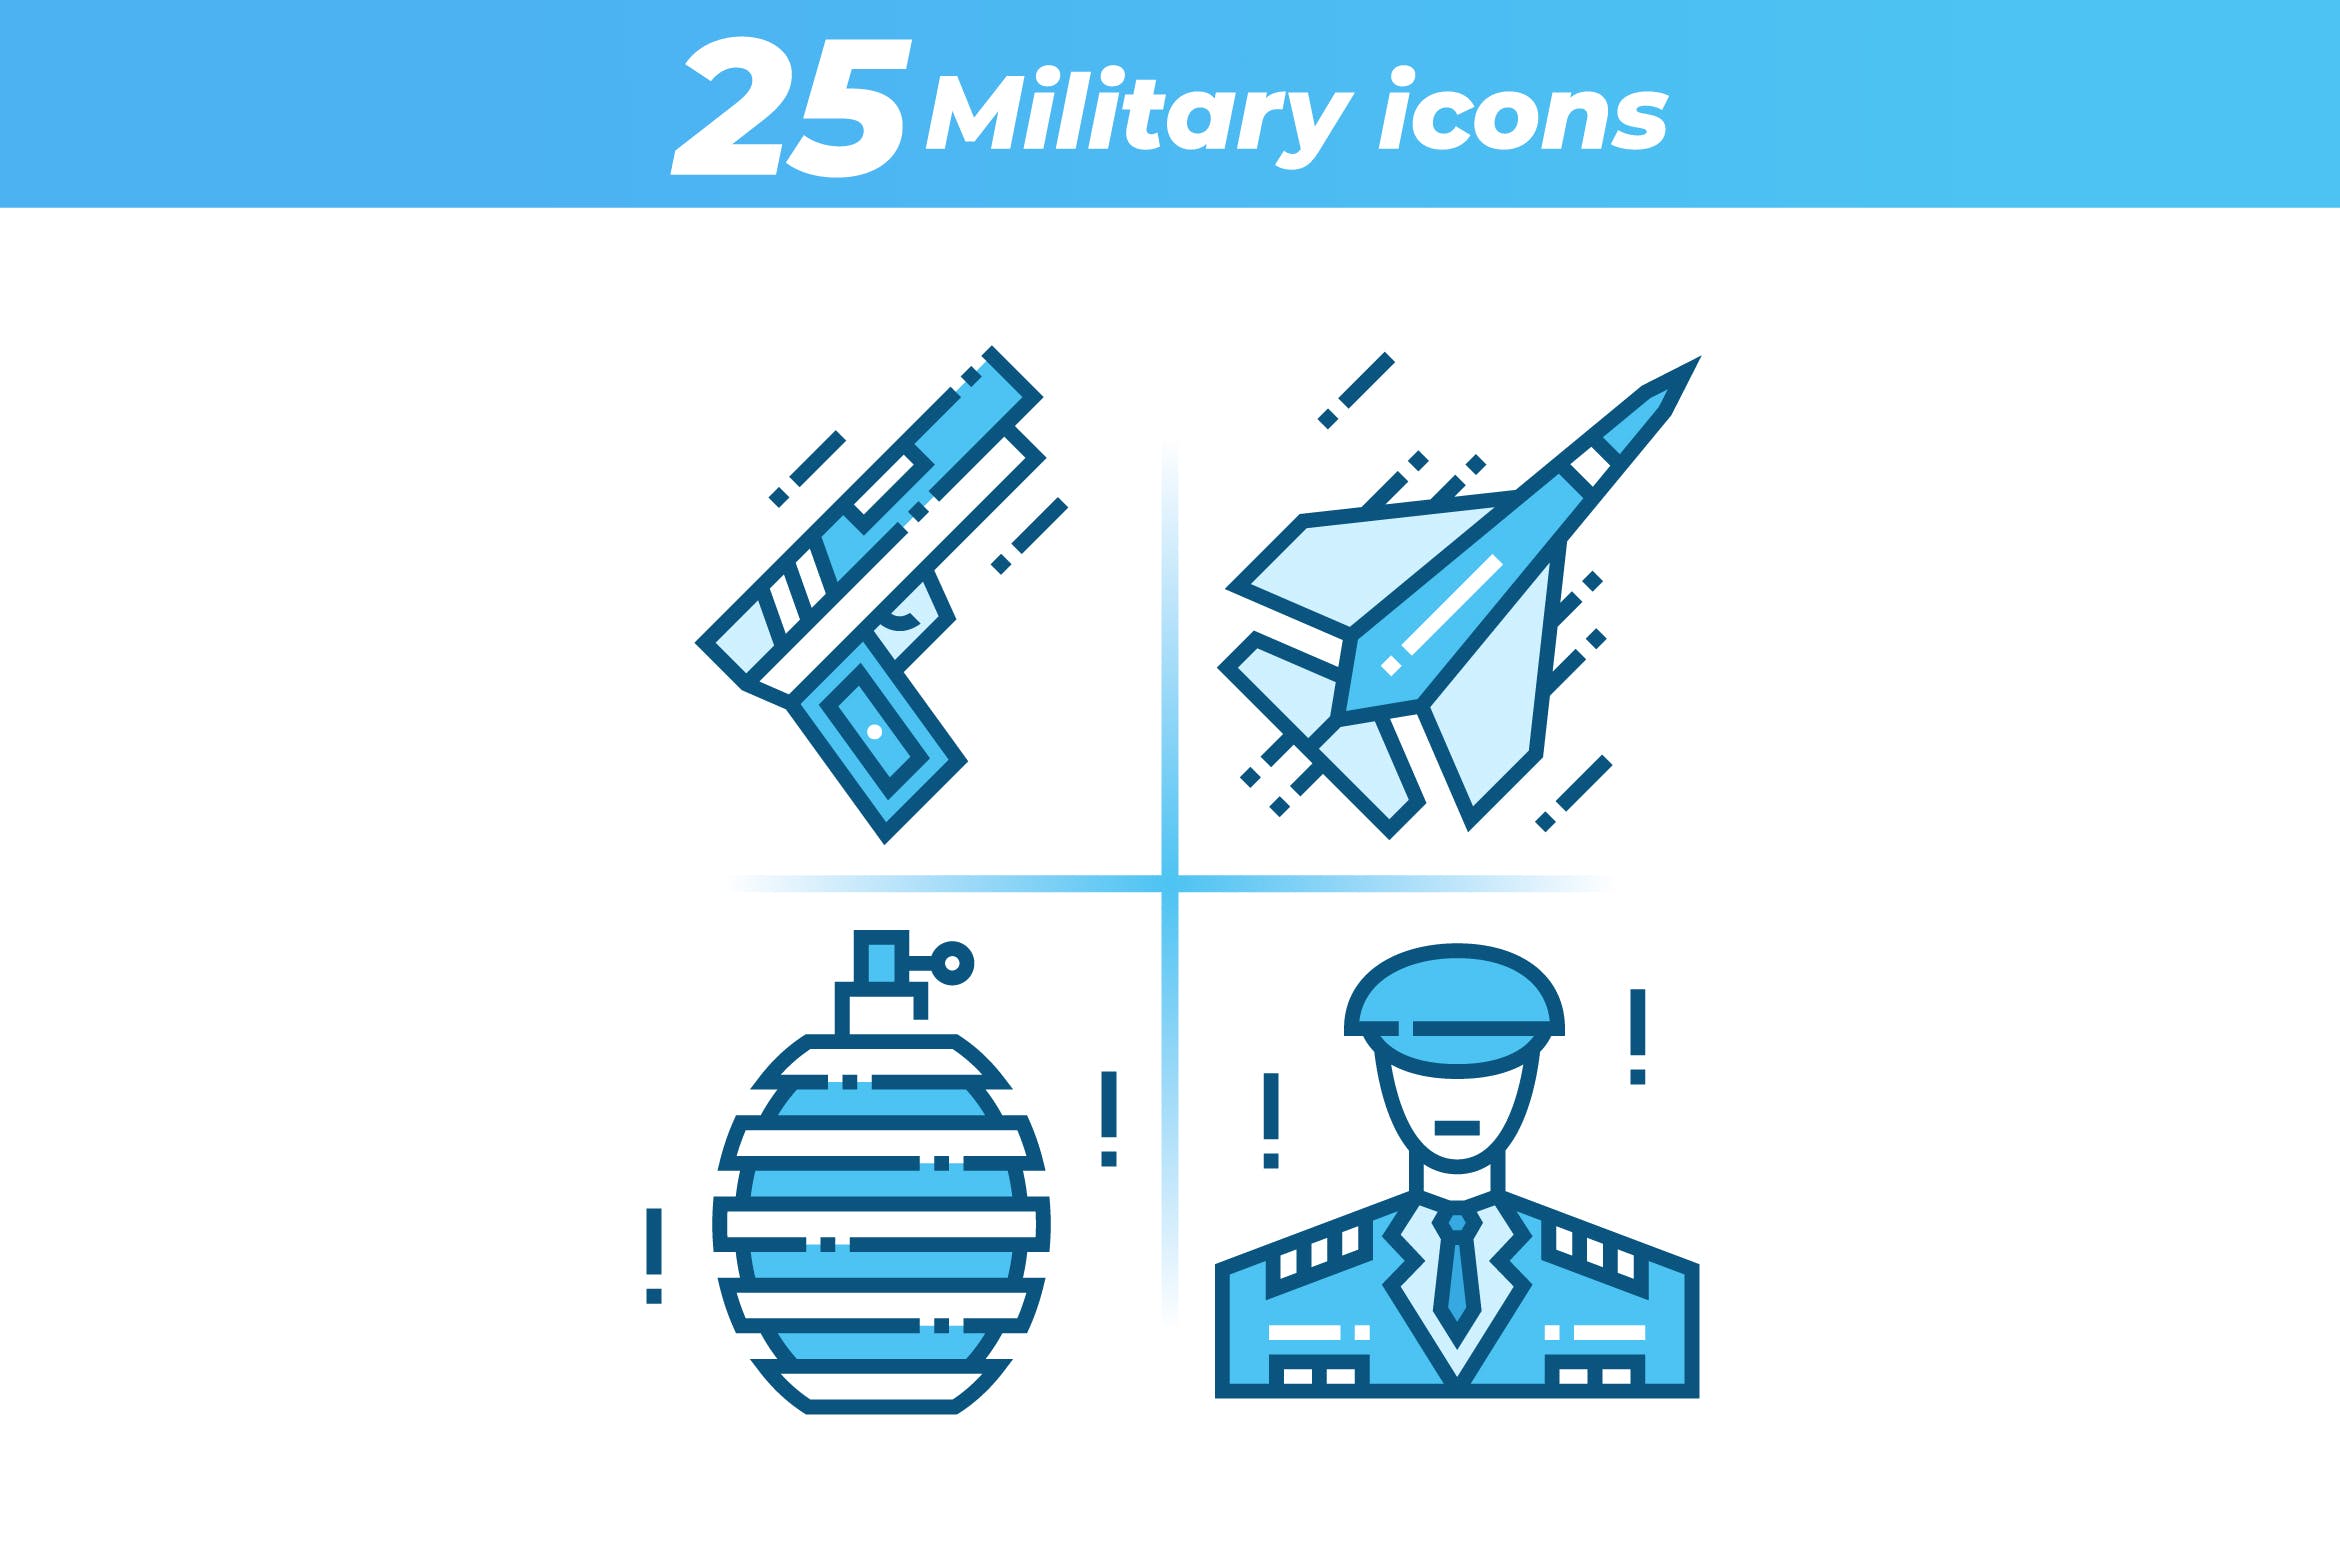 25枚军事主题矢量第一素材精选图标 25 Military Icons插图